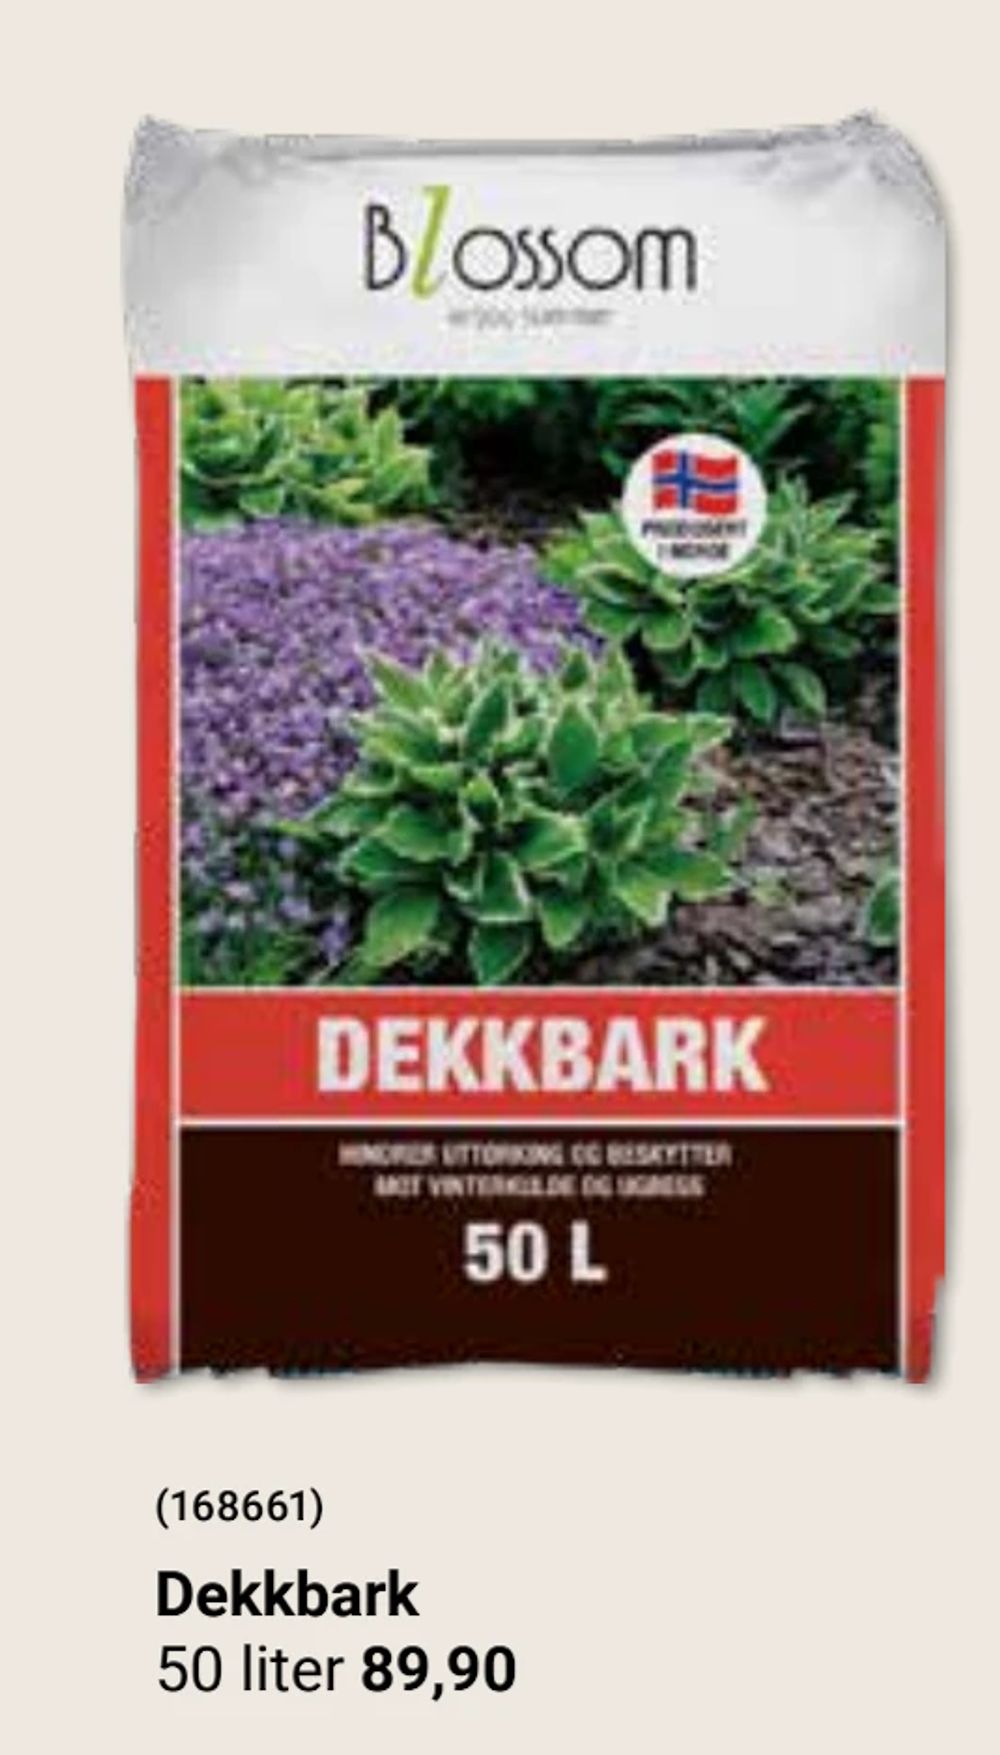 Tilbud på Dekkbark fra Europris til 89,90 kr